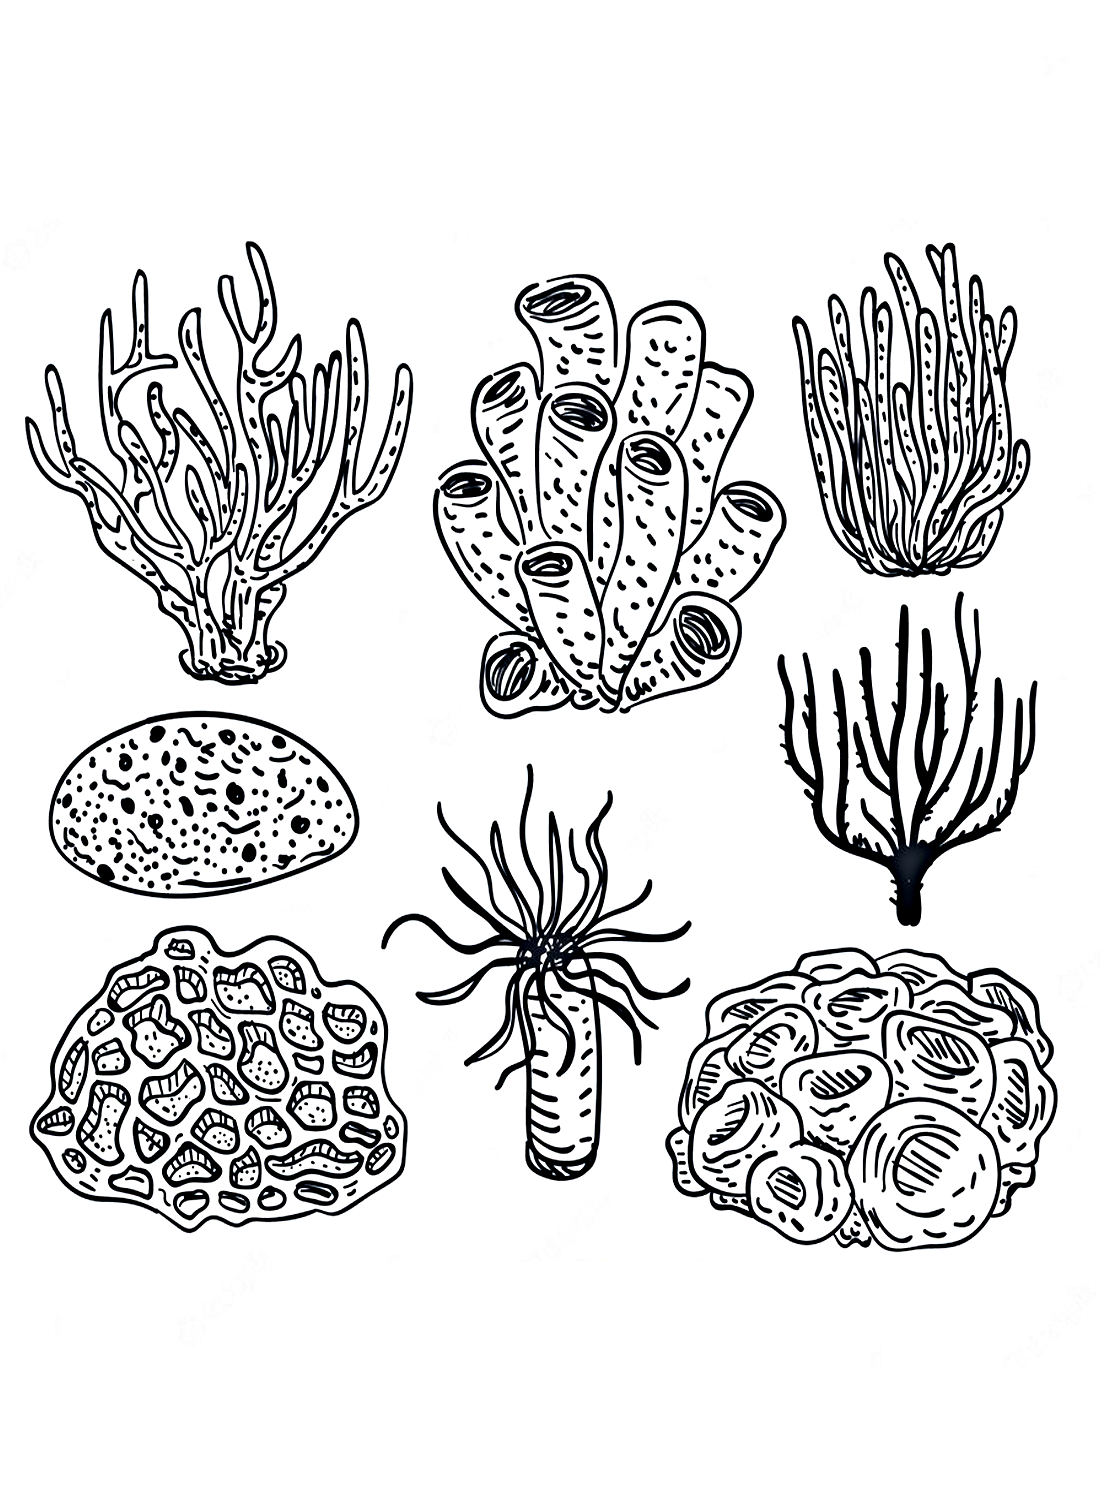 Página para colorir da coleção de corais